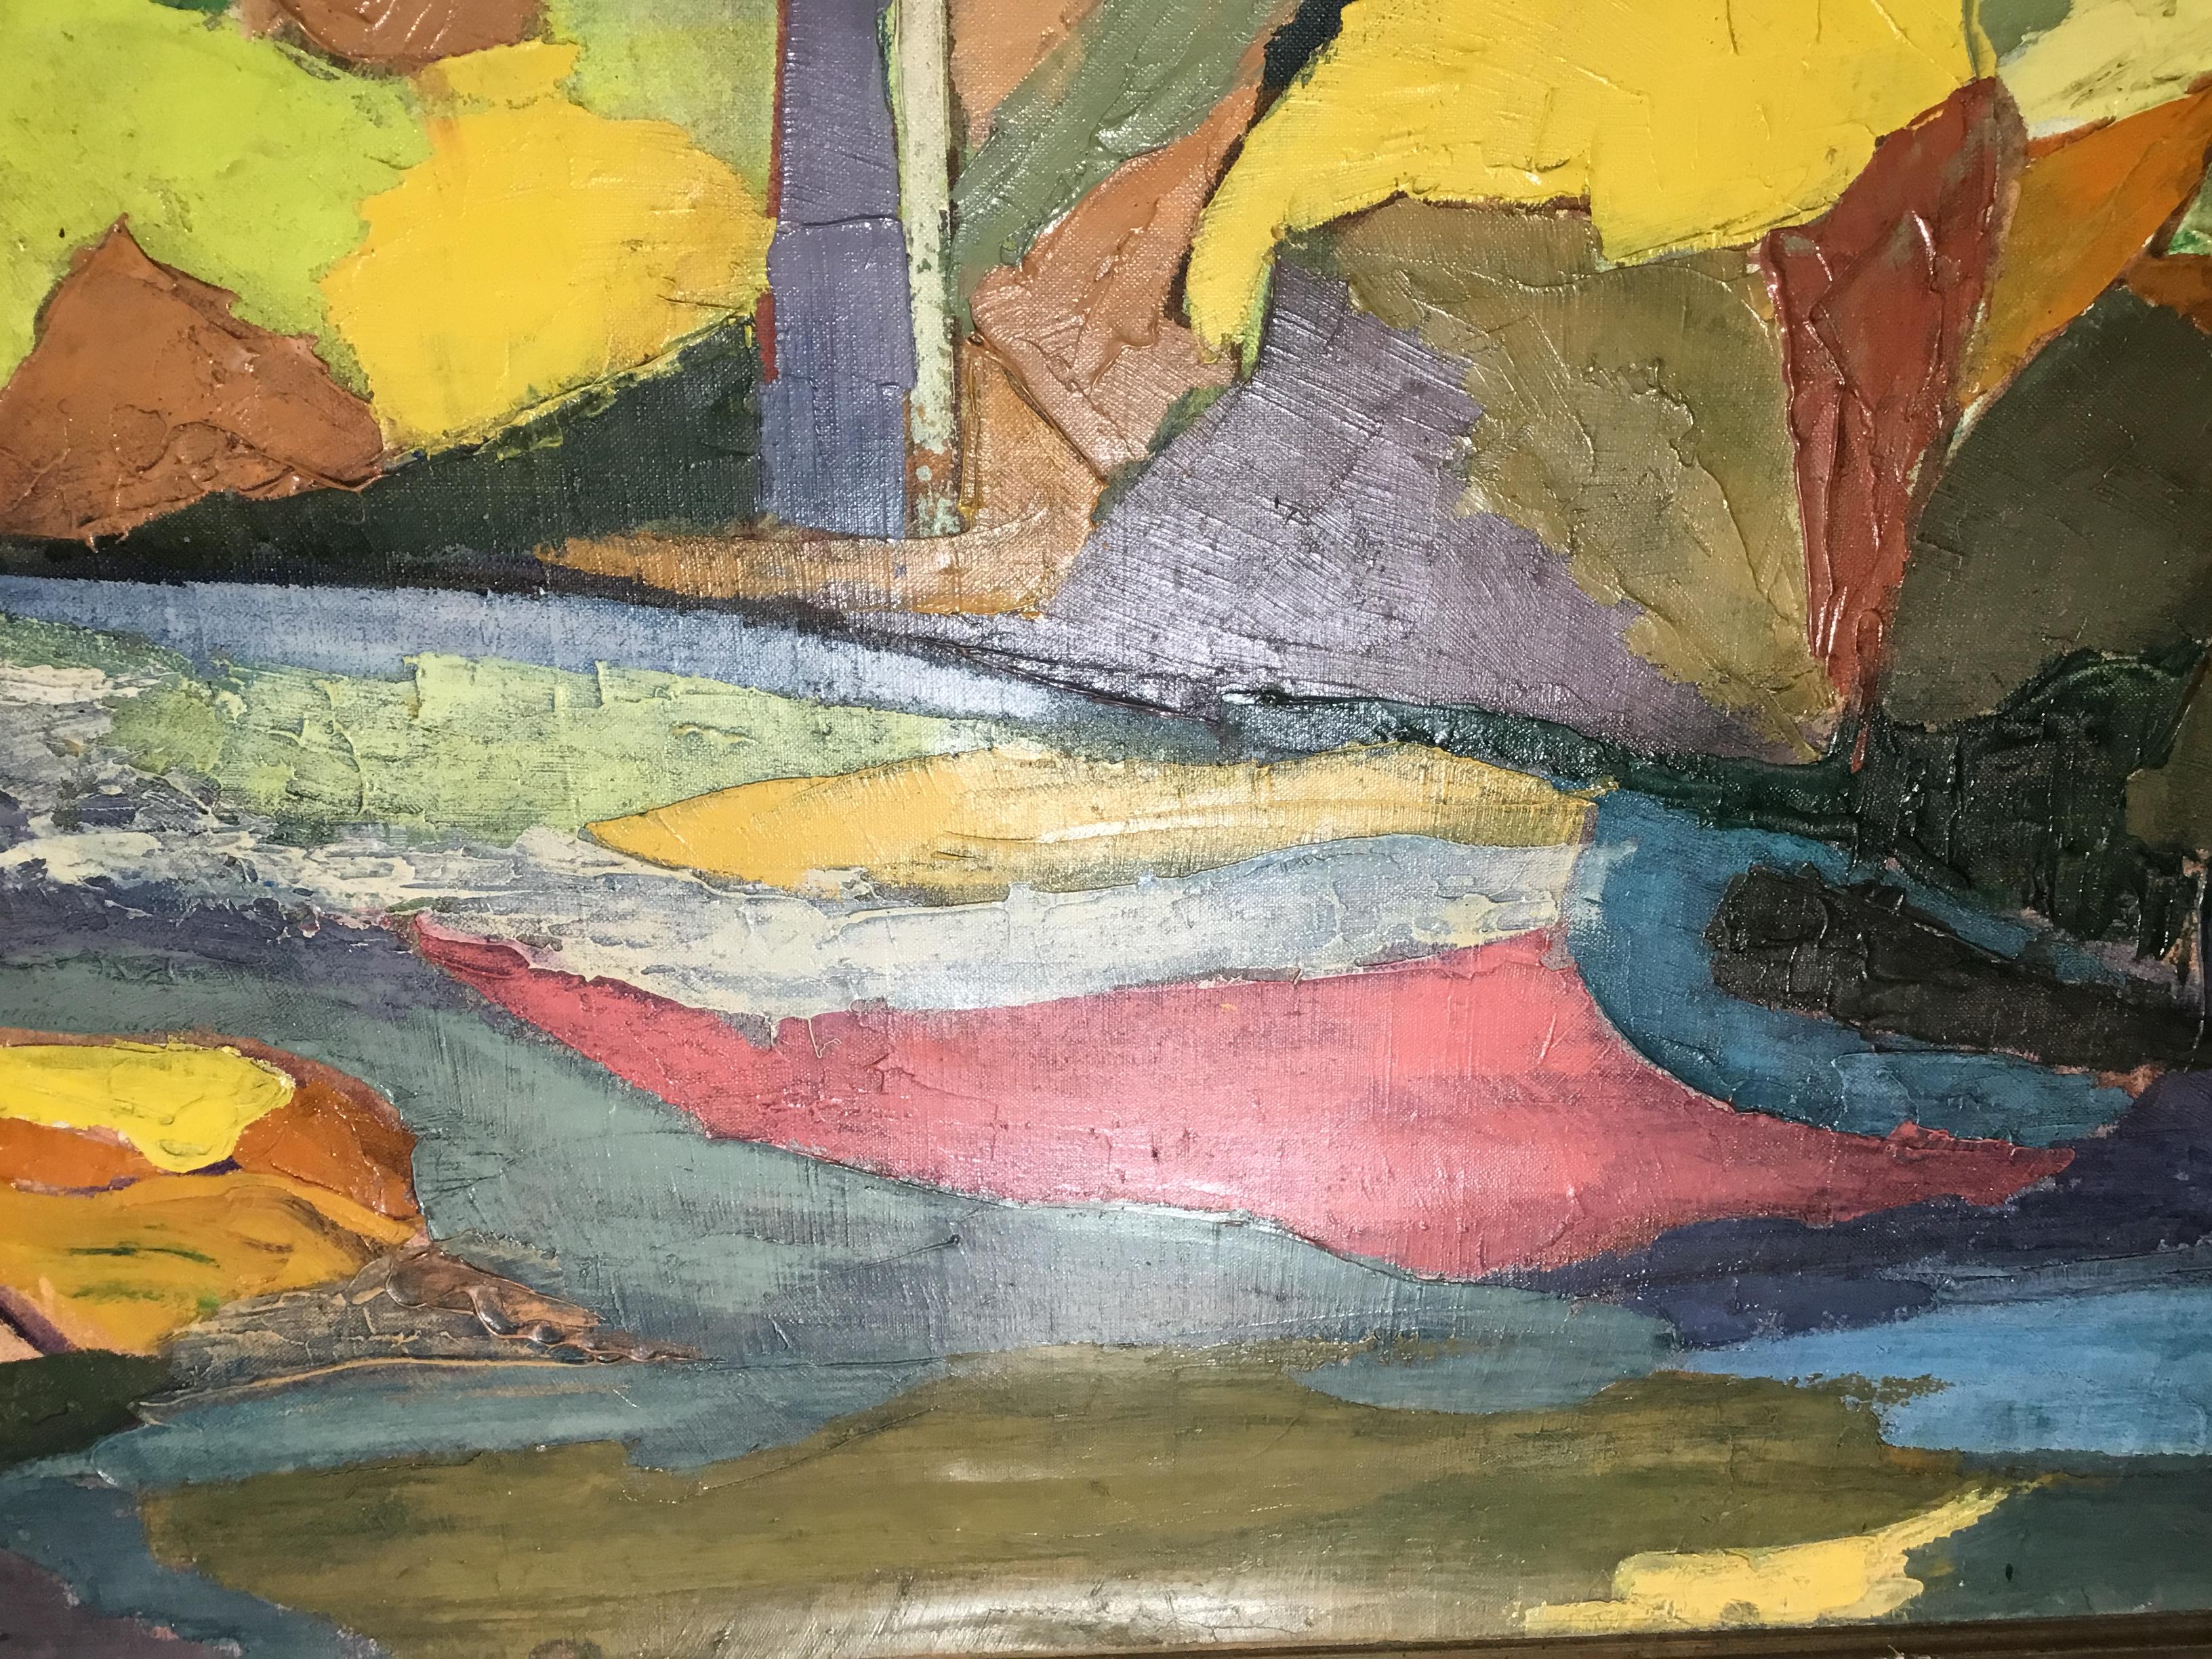 Fantastique peinture à l'huile sur toile du pont Osceola qui enjambe la rivière Sainte-Croix dans le Minnesota ; beau complexe de couleurs réunies pour en faire une peinture très décorative et unique à accrocher au mur. Peinture originale de